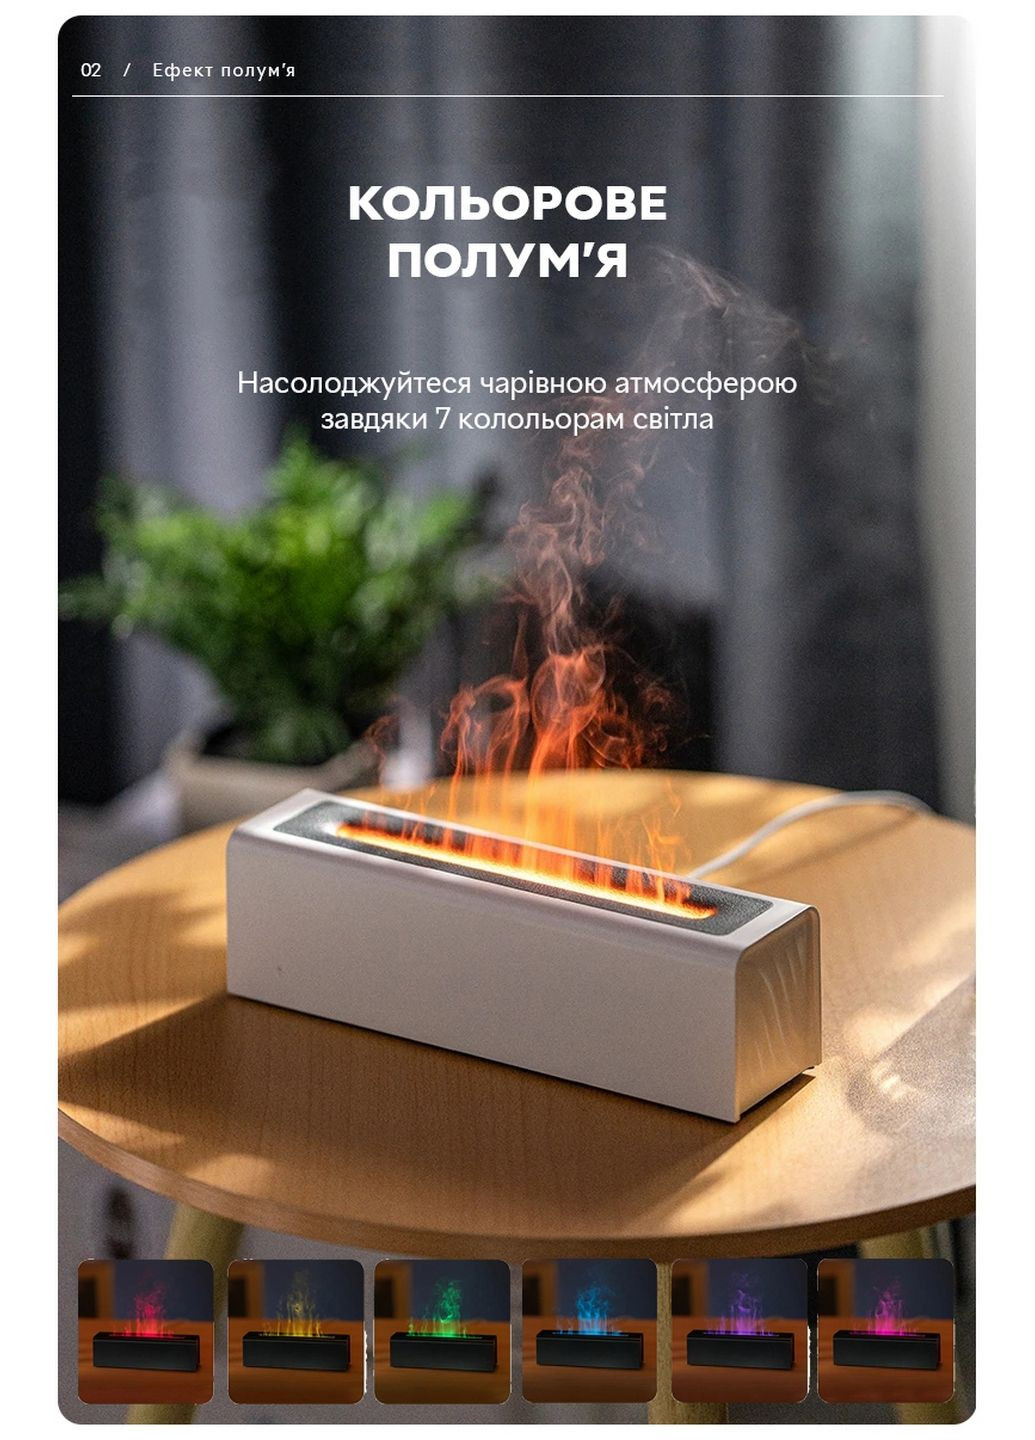 Увлажнитель воздуха портативный DQ-711 Nordic Style Flame V3 аромадифузор электрический, эффект пламени, ПОДАРОК + 2 Арома масла Kinscoter (293483492)